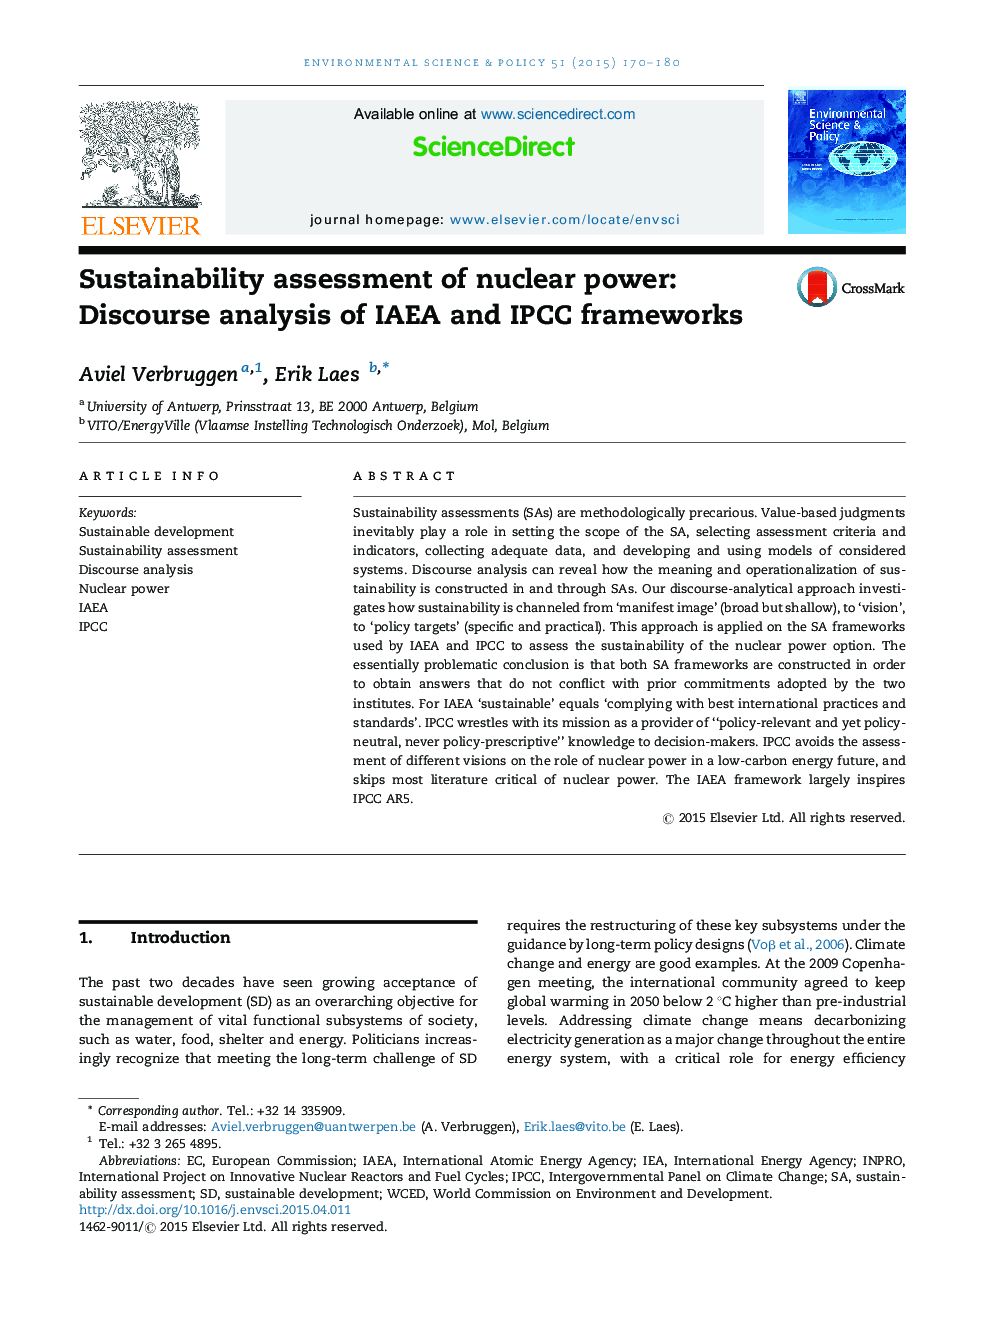 ارزیابی پایداری انرژی هسته ای: تجزیه و تحلیل گفتمان چهارچوب آژانس بین المللی انرژی اتمی و آی. آی 